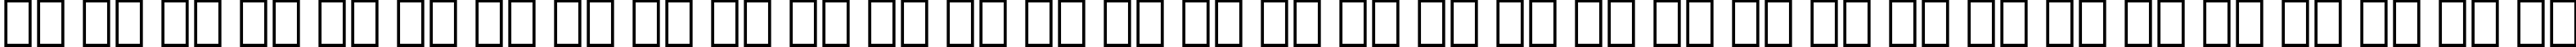 Пример написания русского алфавита шрифтом Oranda Bold Condensed BT